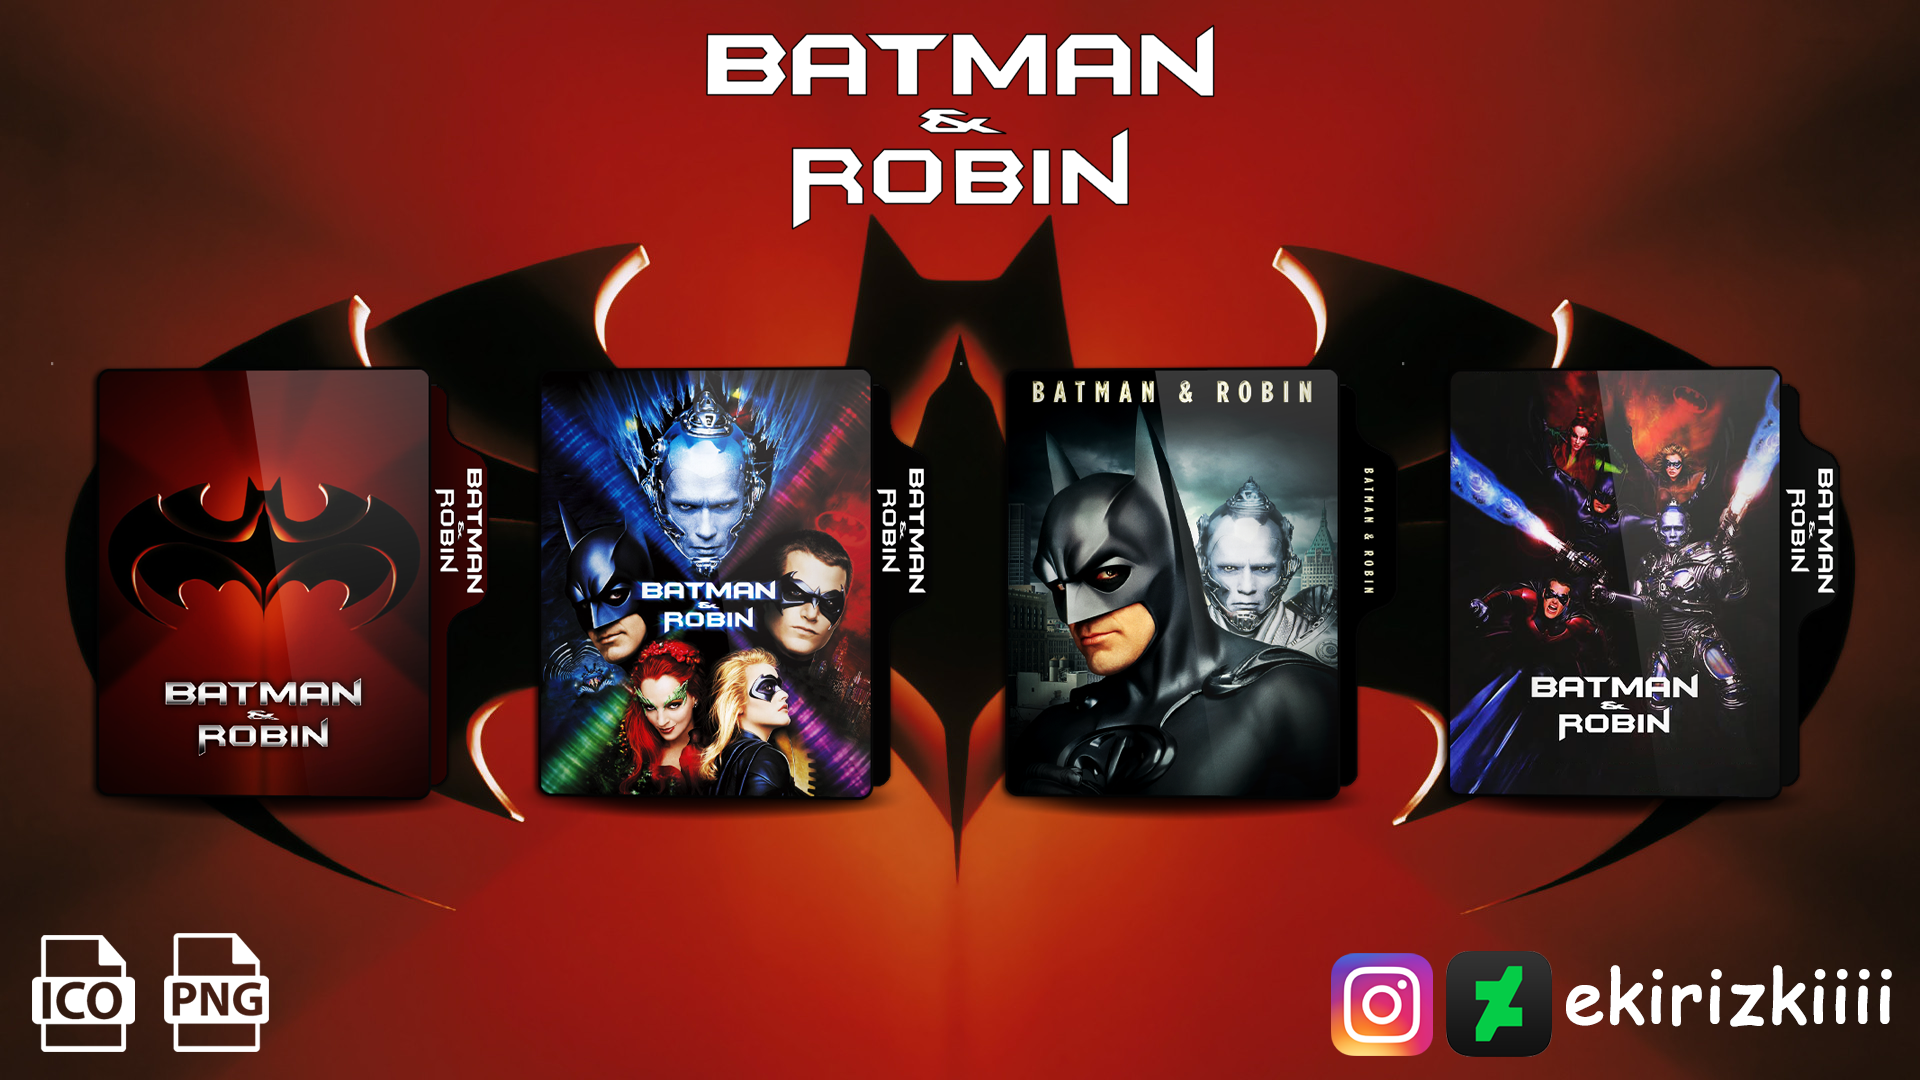 Batman and Robin (1997) Folder Icon by ekirizkiiii on DeviantArt